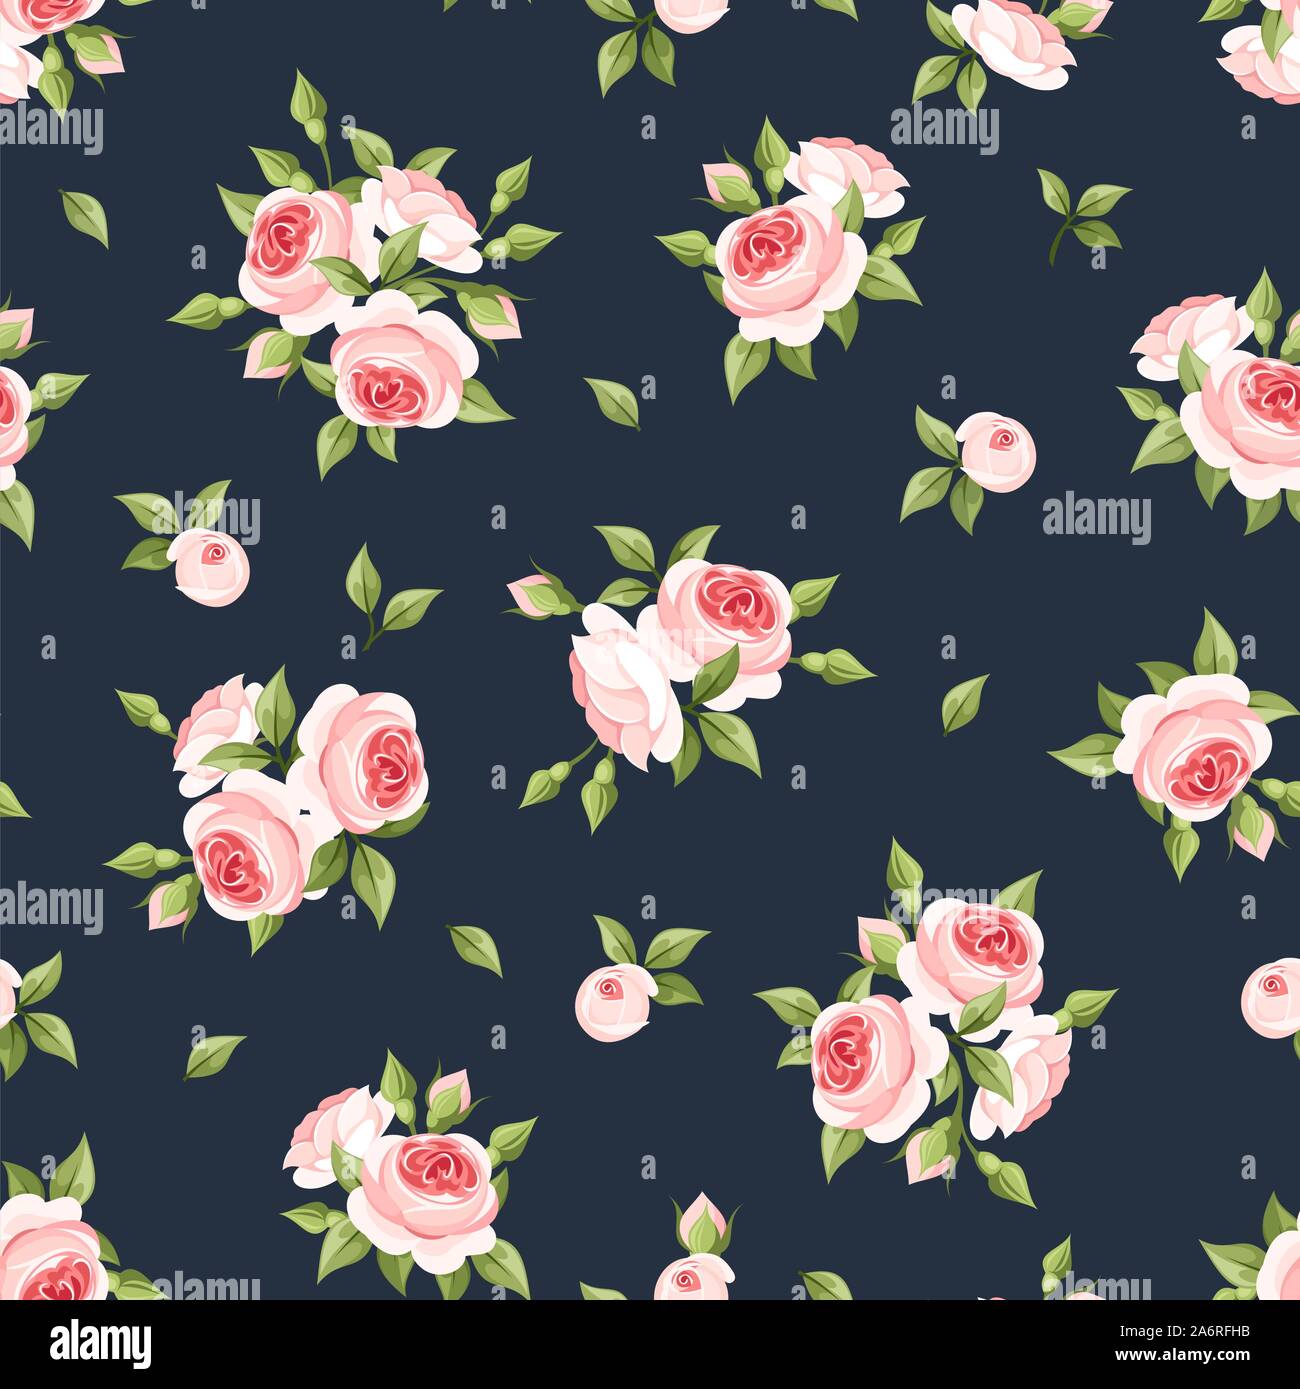 Vektor nahtlose Muster mit rosa Rosen auf einem dunkelblauen Hintergrund. Stock Vektor